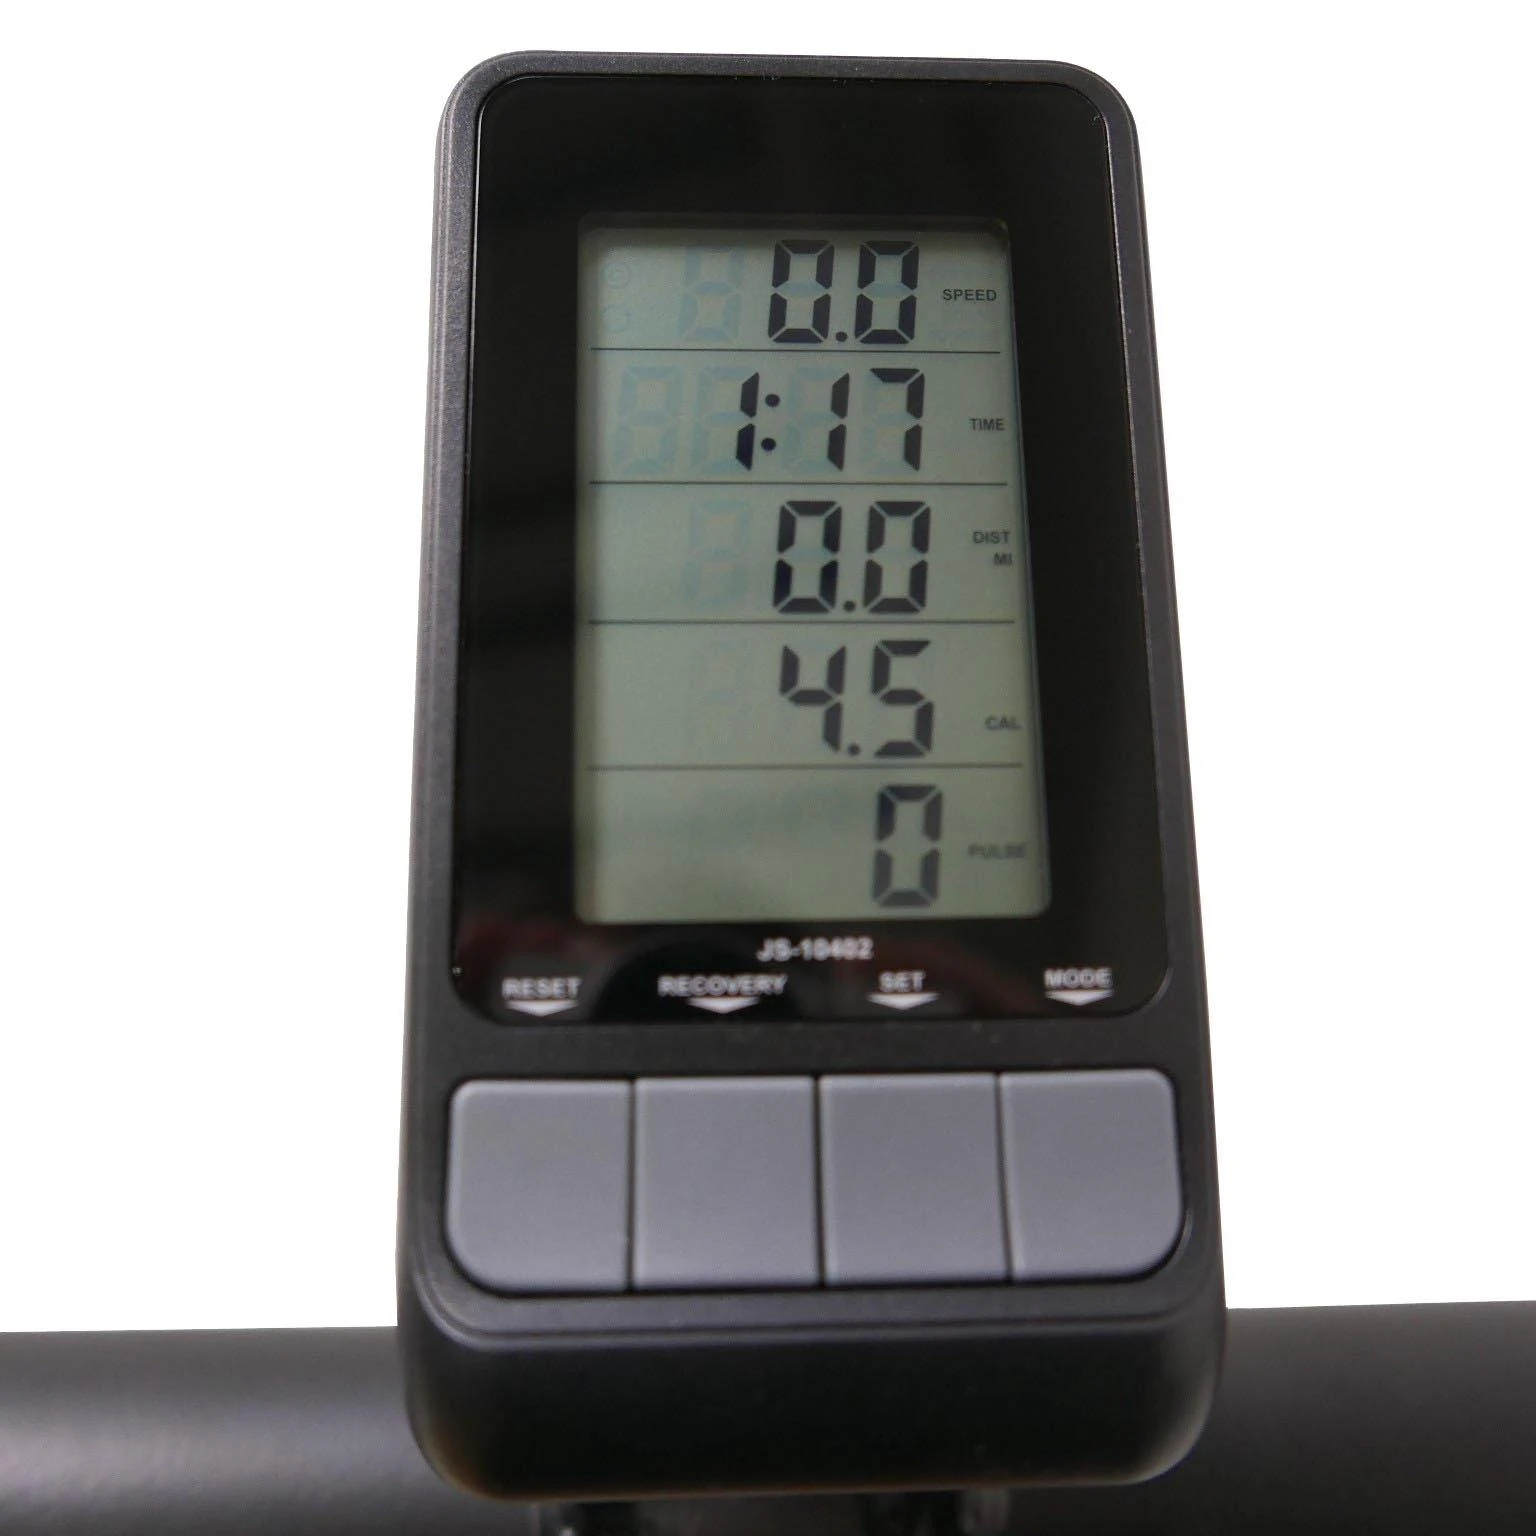 Curve Runner Pro – Non-Motorised Treadmill Display